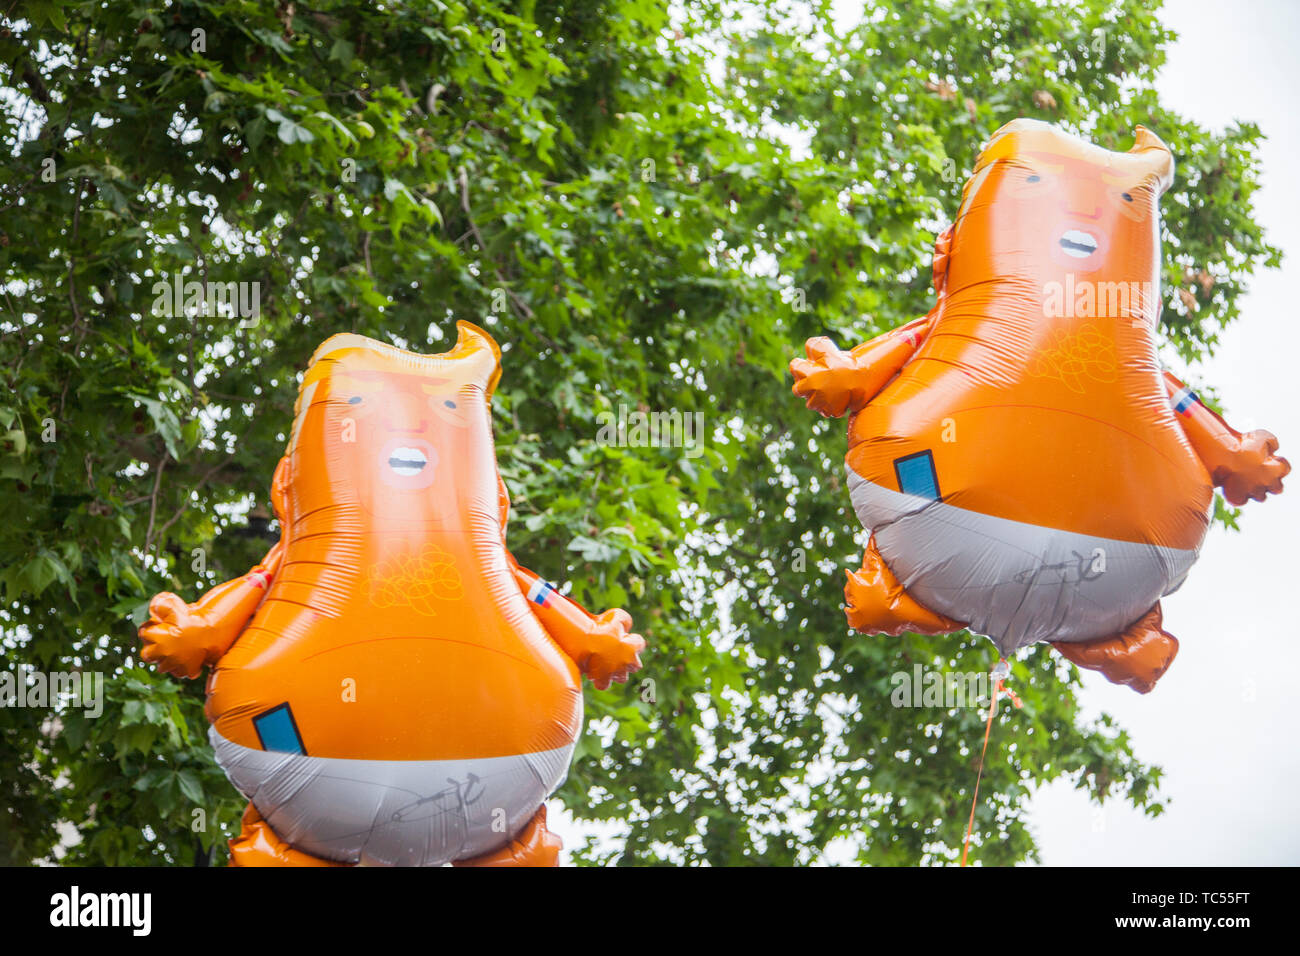 Londres, Reino Unido - 4 junio, 2019: Baby Donald Trump globos de helio durante un Anti Trump rally en el centro de Londres Foto de stock